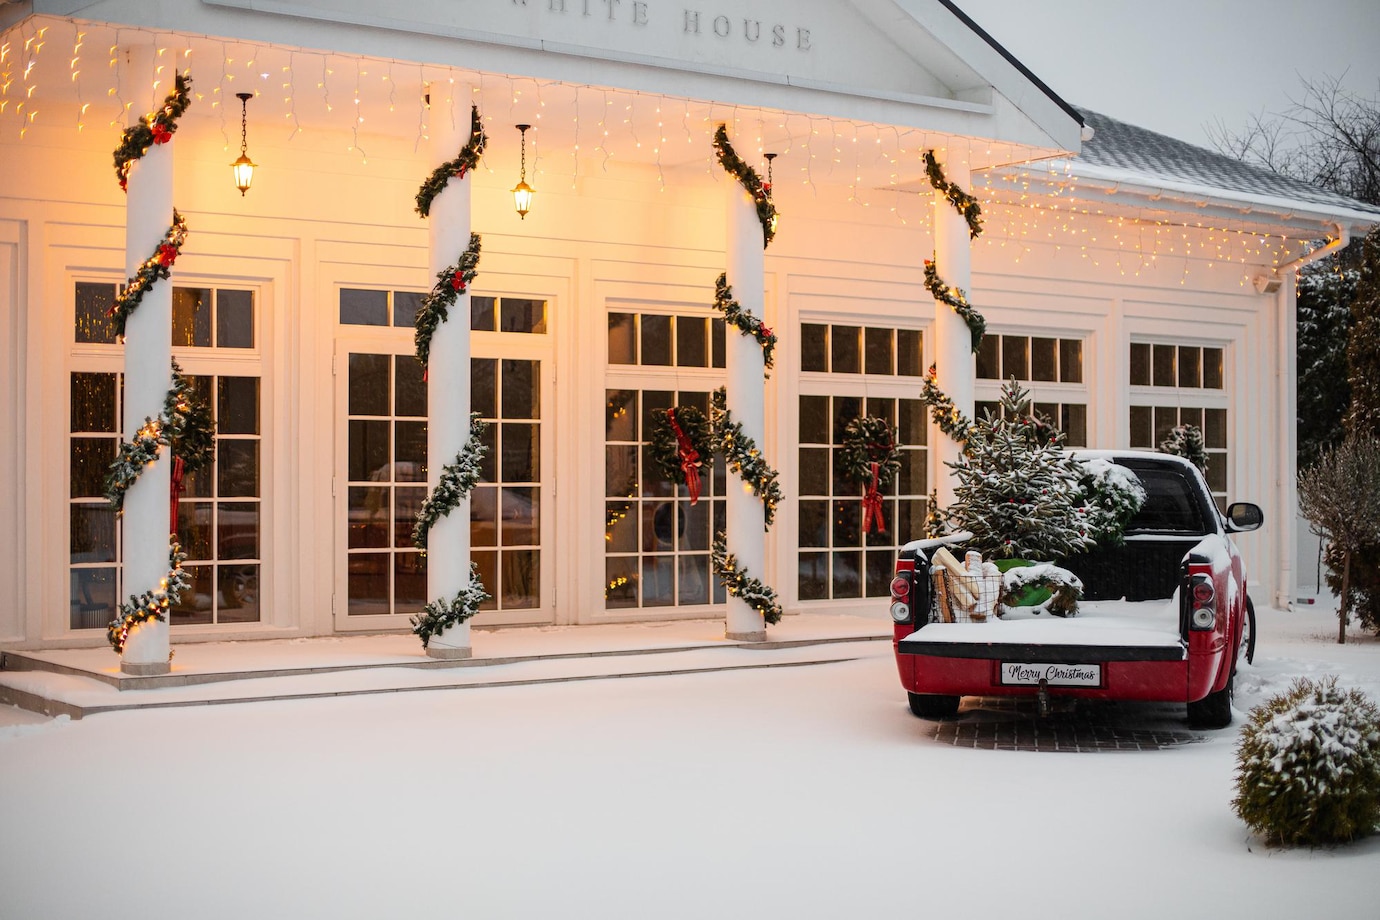 La imagen muestra una casa blanca con cuatro columnas decoradas con flores navideña. A la izquierda hay una caminoneta roja con un árbol de navidad sobre la calle nevada. 